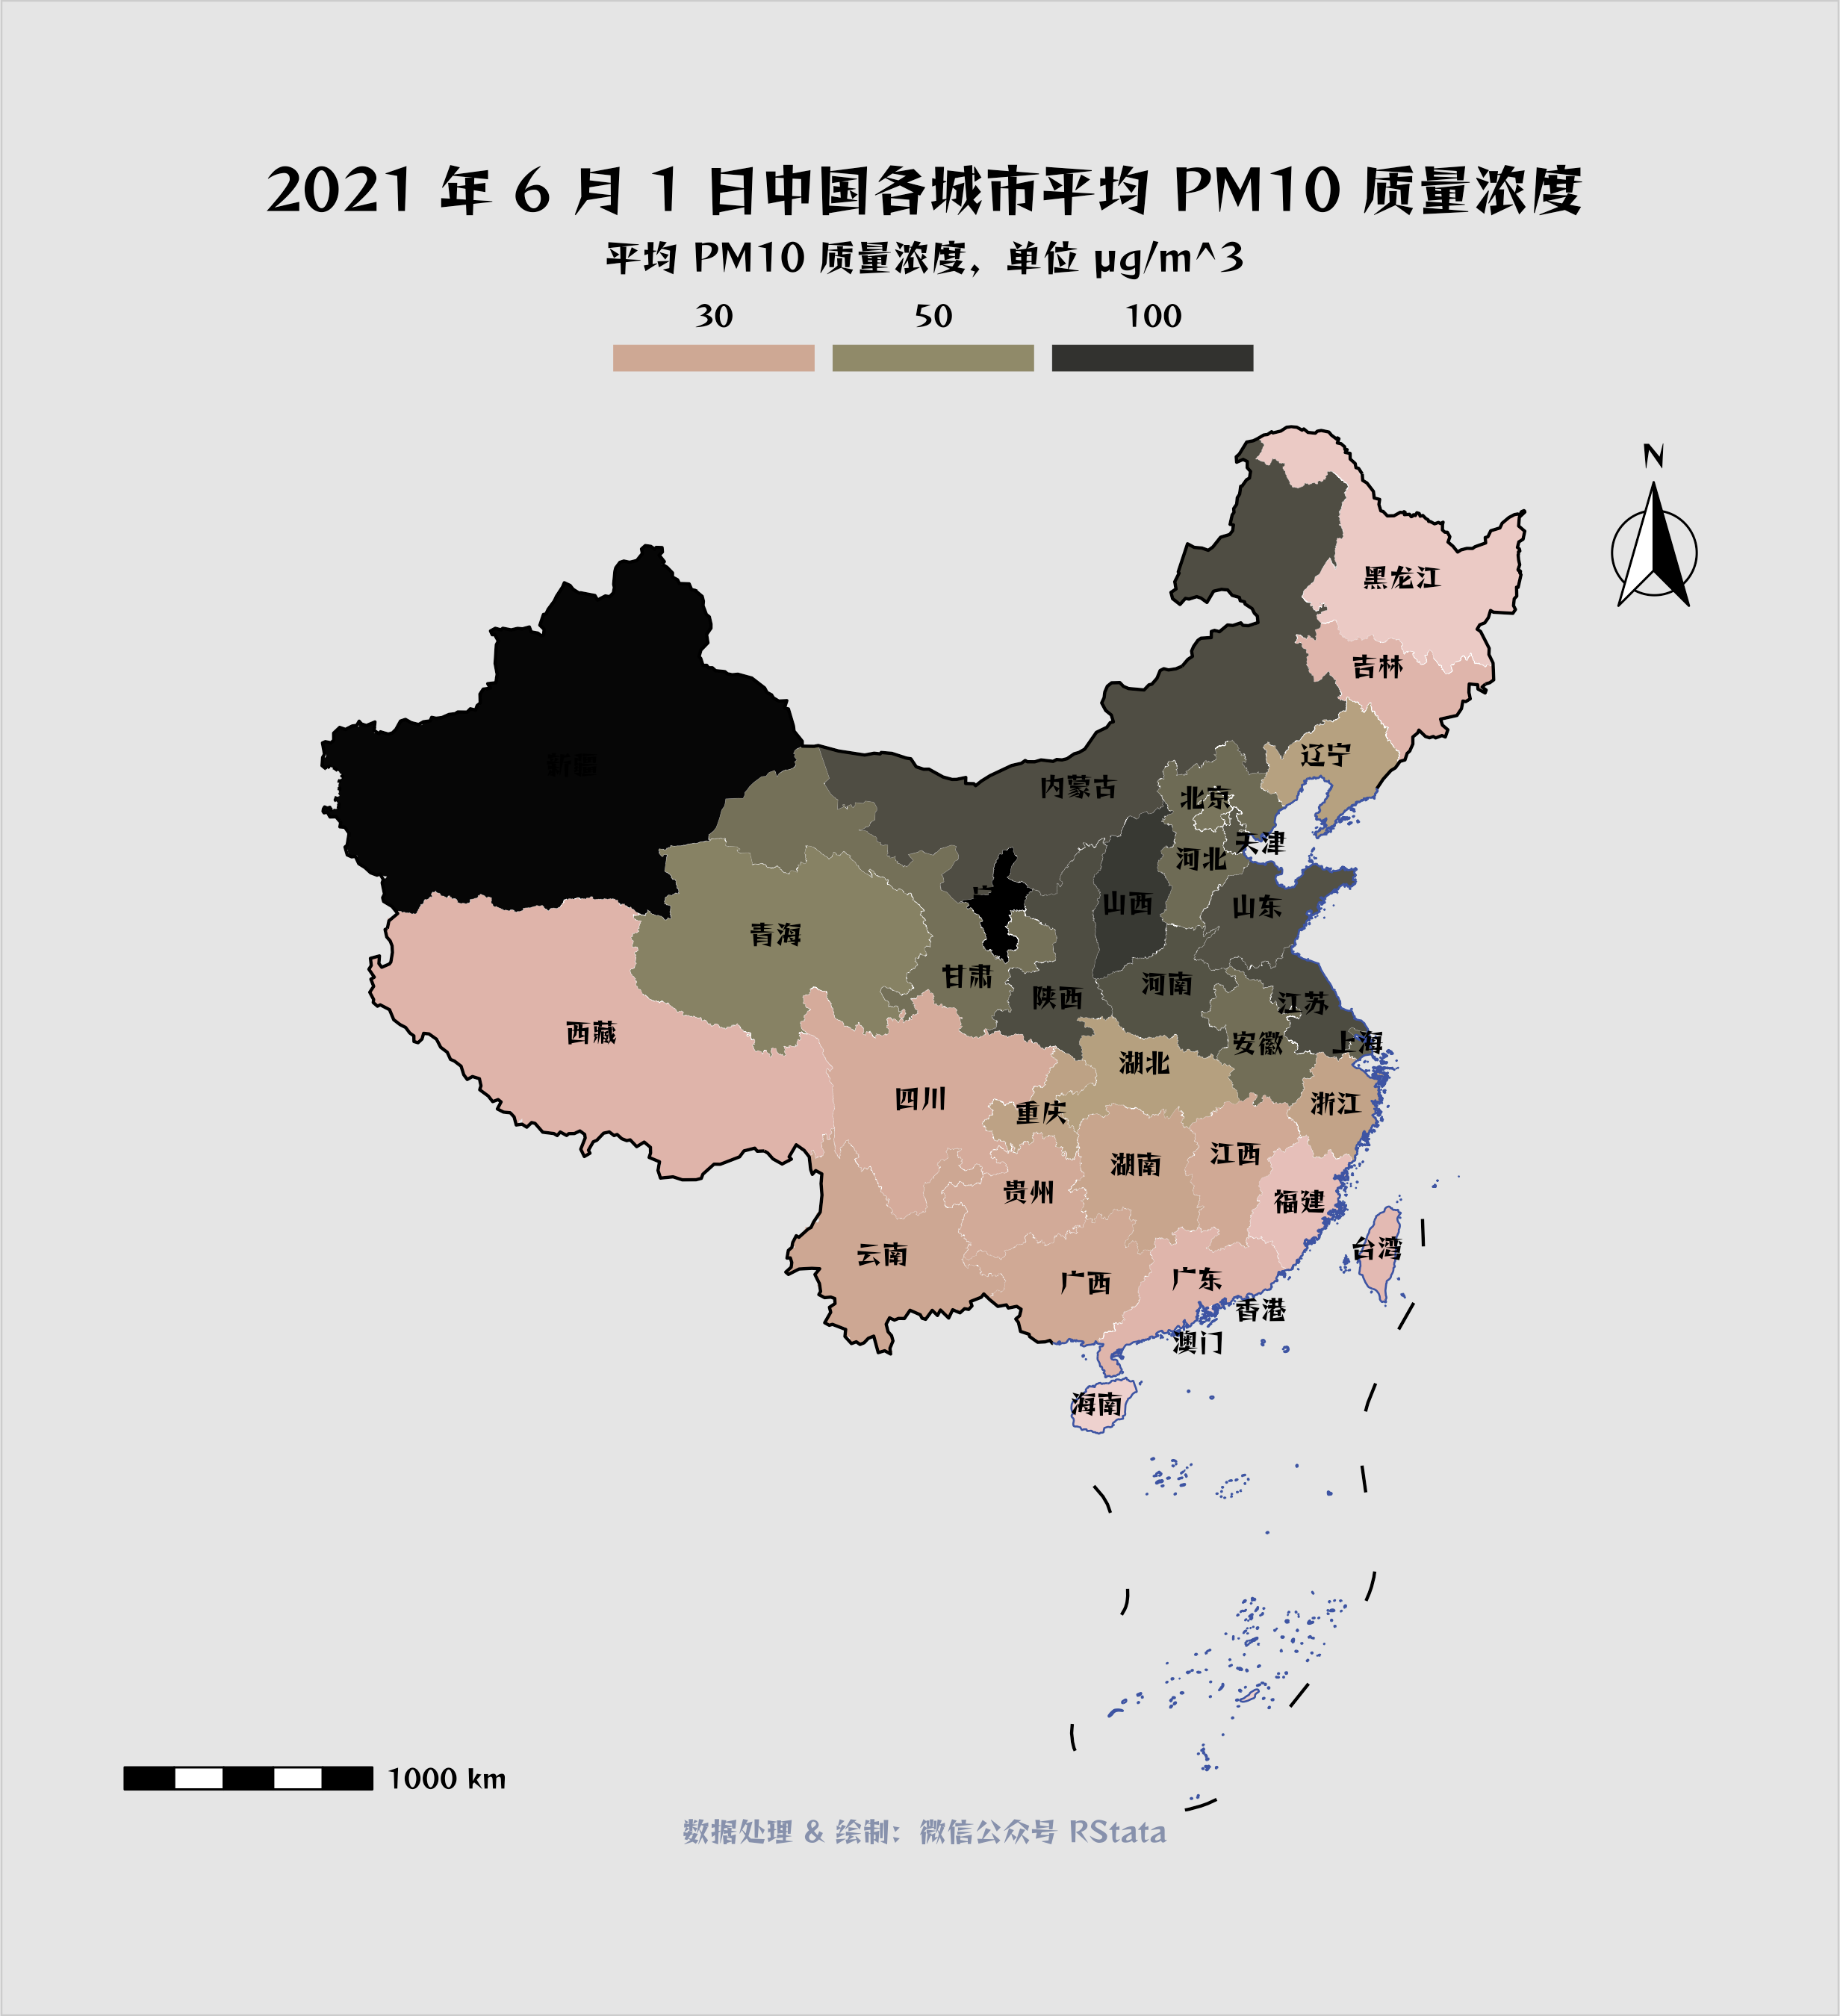 2021 年 6 月 1 日中国各省份的年均 PM10 质量浓度分布（单位：微克/立方米）